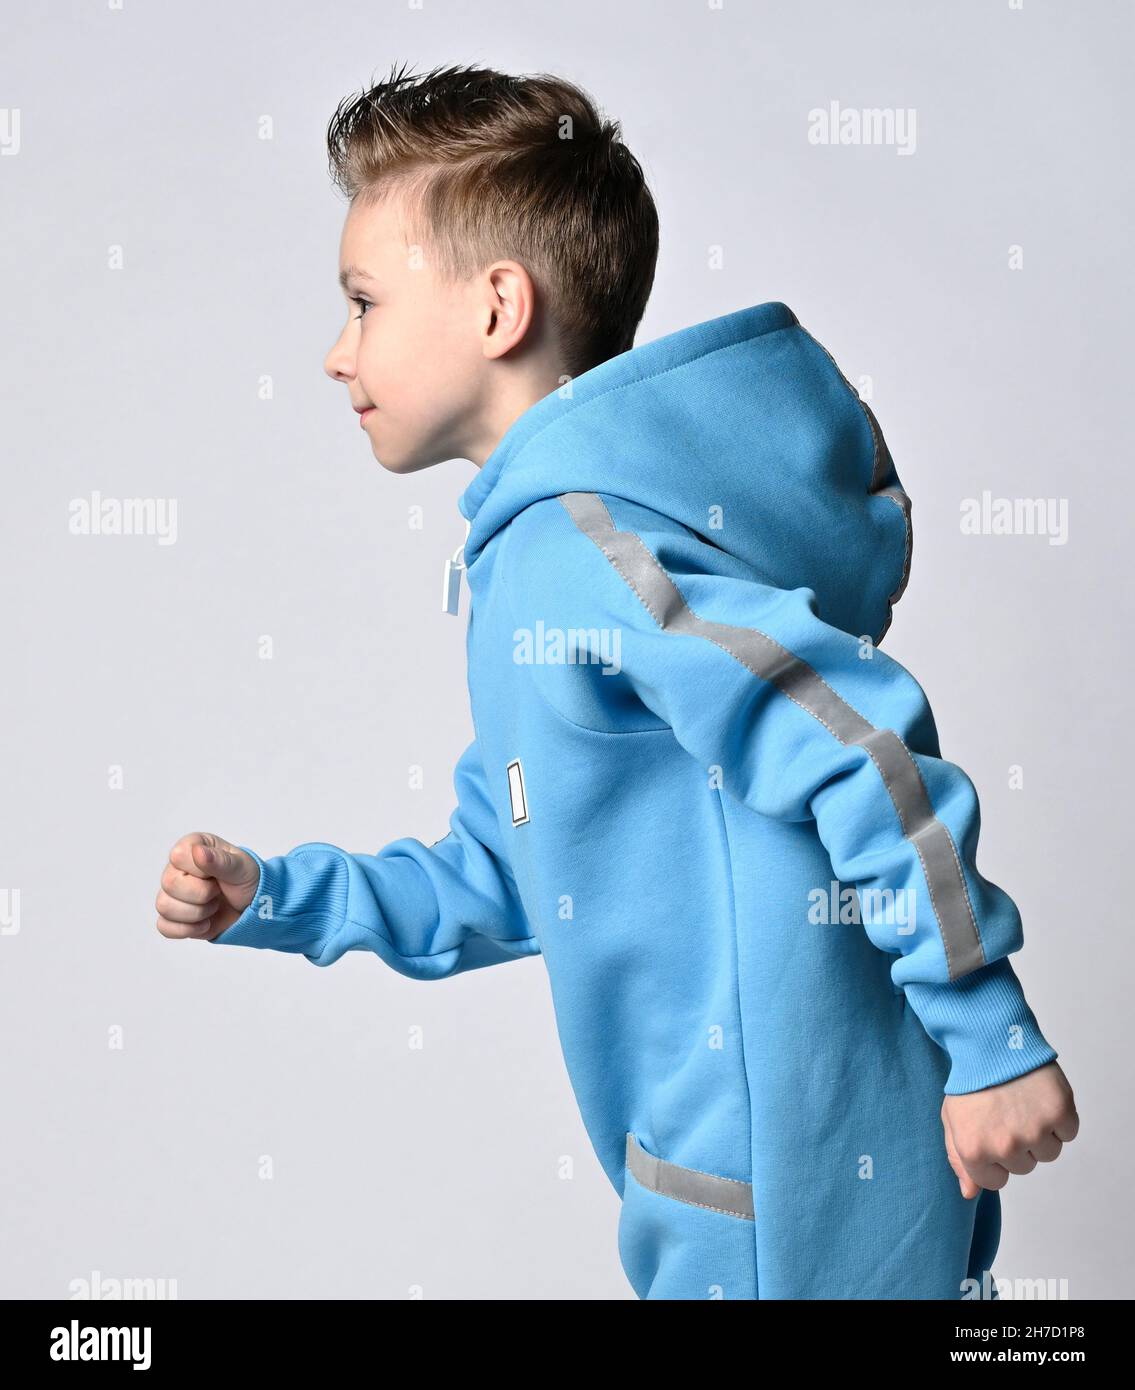 Porträt eines frolic, aktiven Jungen in blauen Jumpsuit mit Kapuze und  Taschen mit reflektierenden Streifen laufen. Seitenansicht Stockfotografie  - Alamy